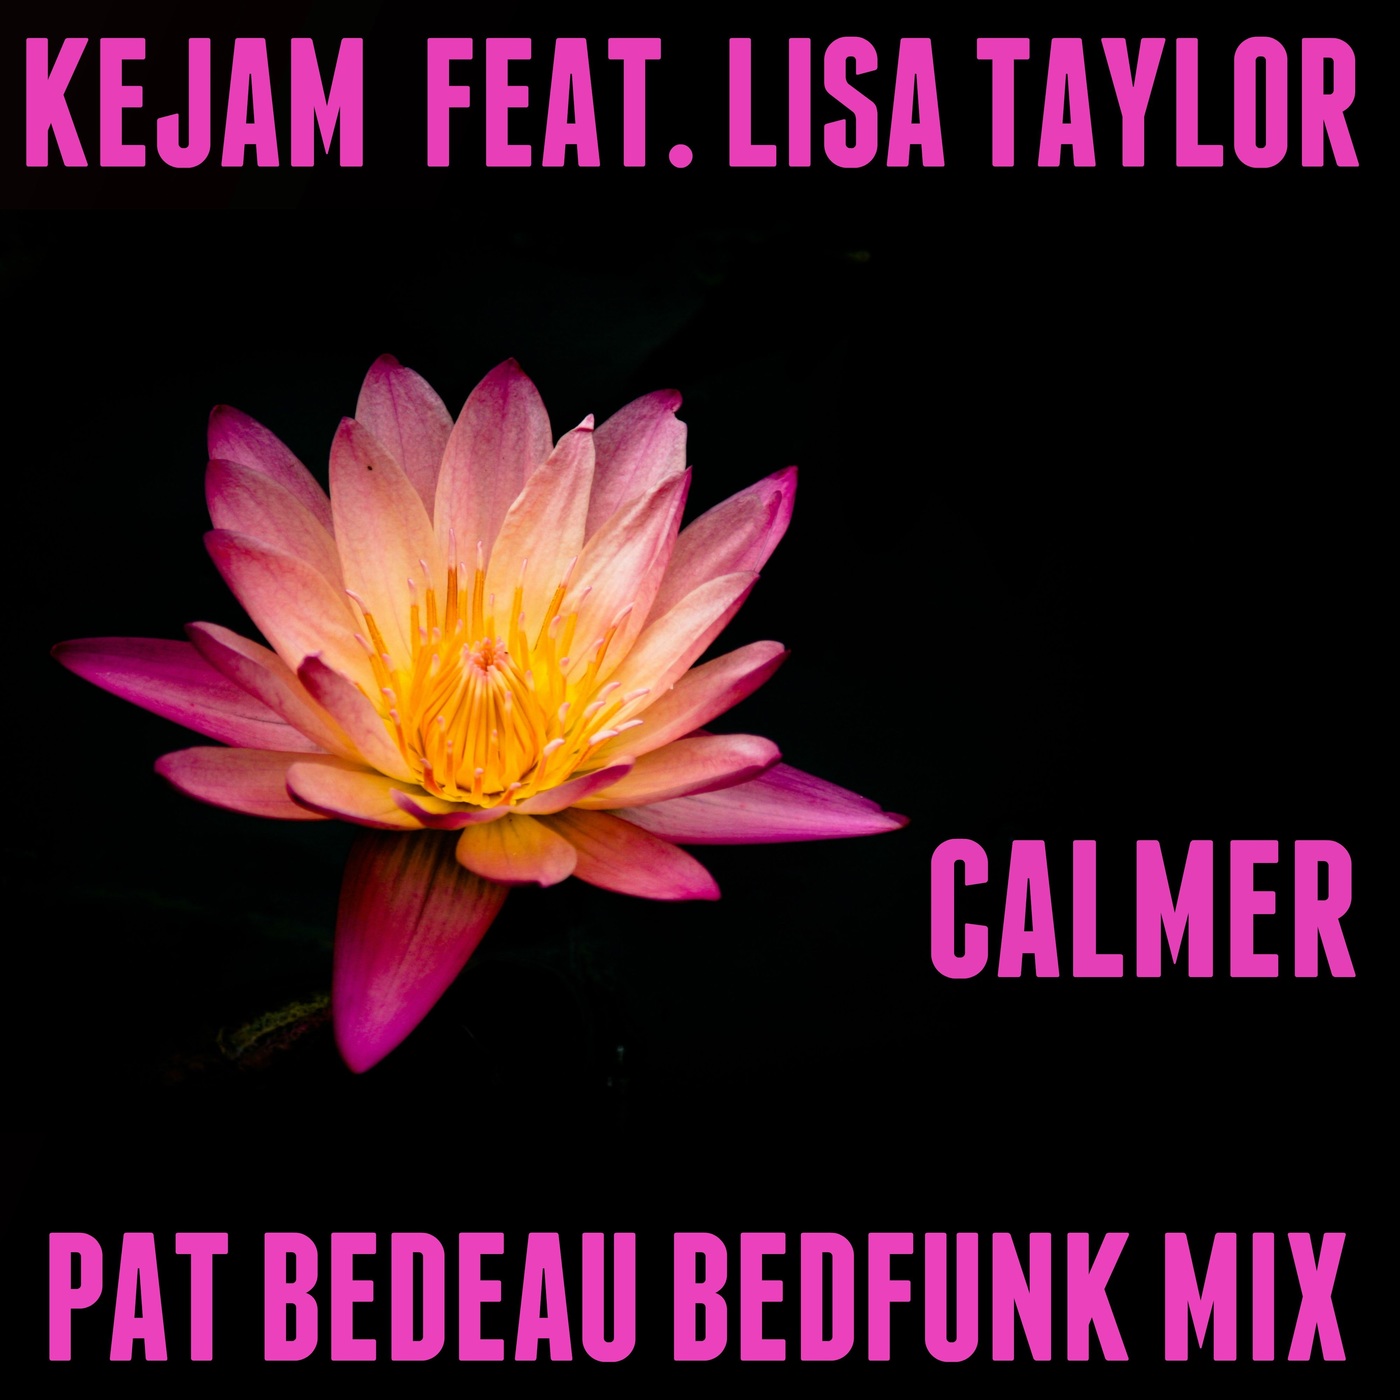 Kejam ft Lisa Taylor - Calmer (Pat Bedeau Bedfunk Mix) / VEC